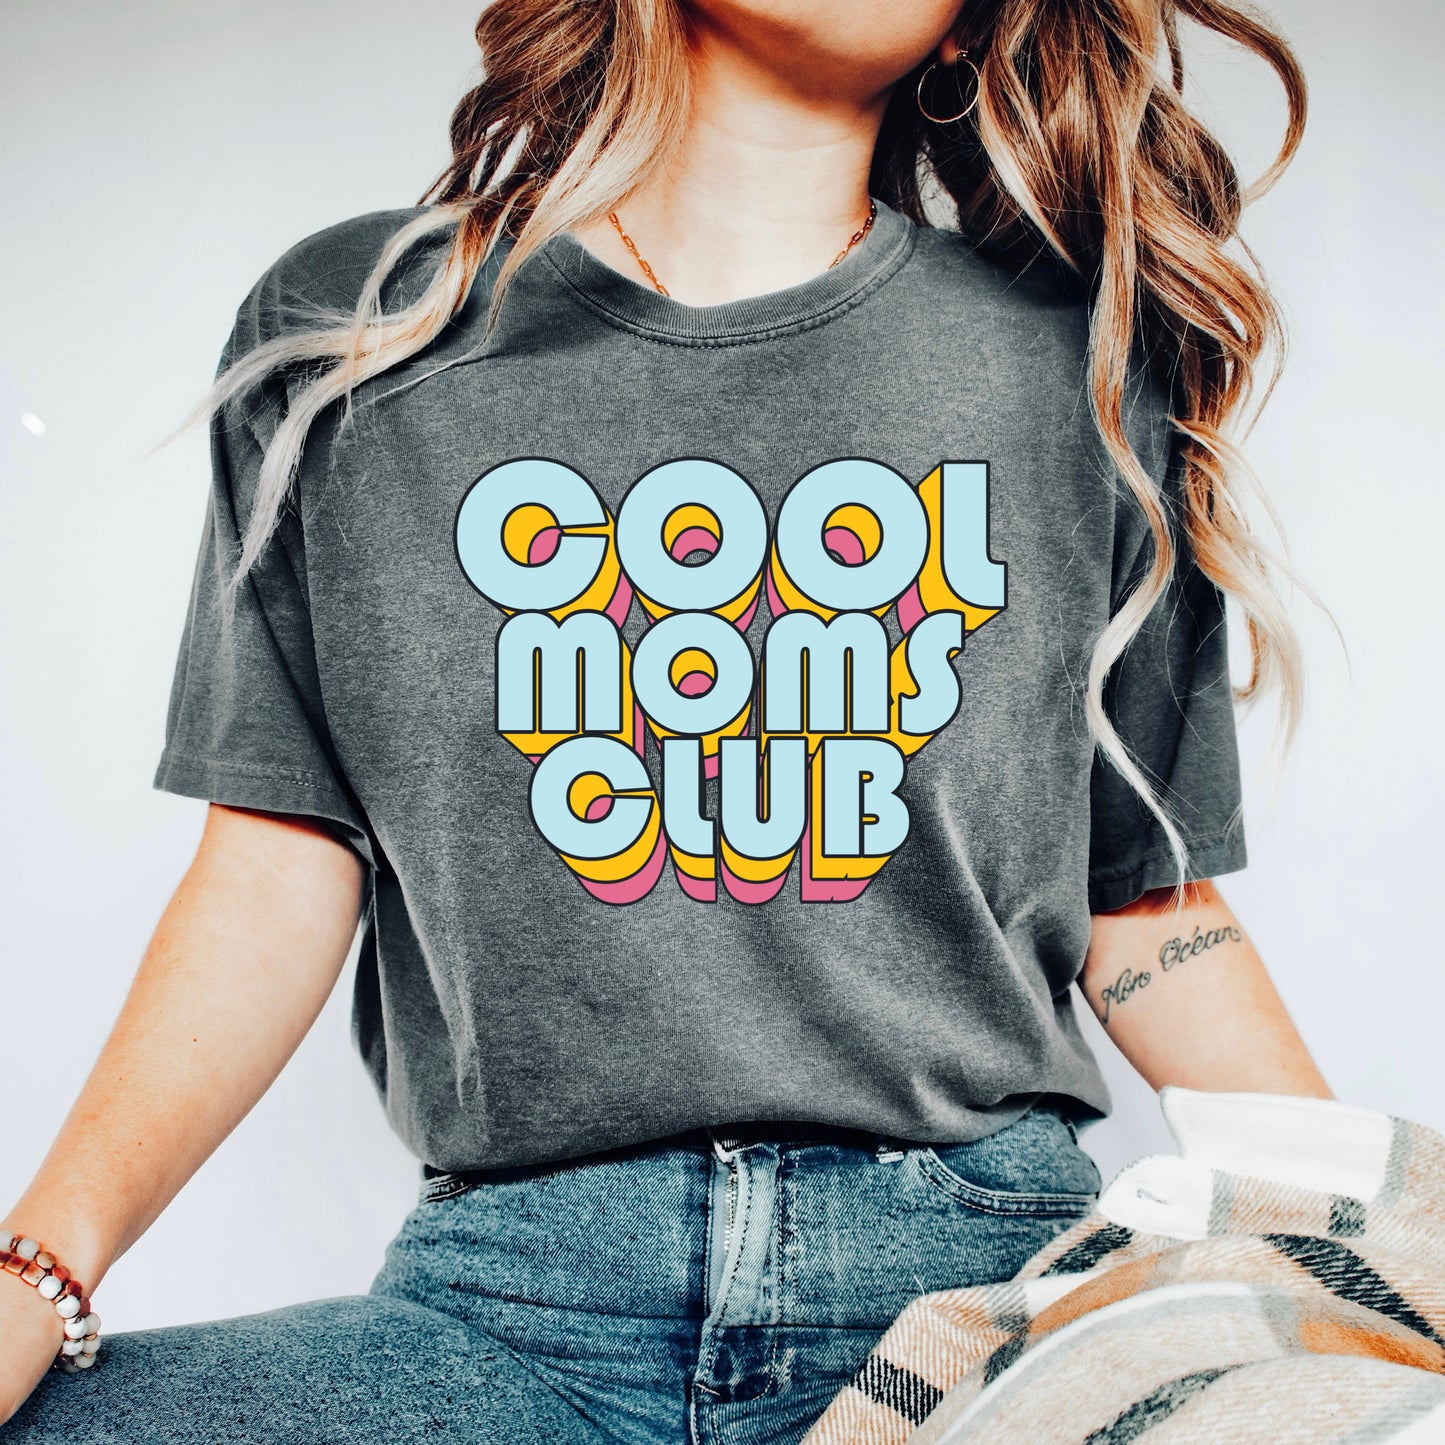 Cool moms club full size *GLITTER Print*